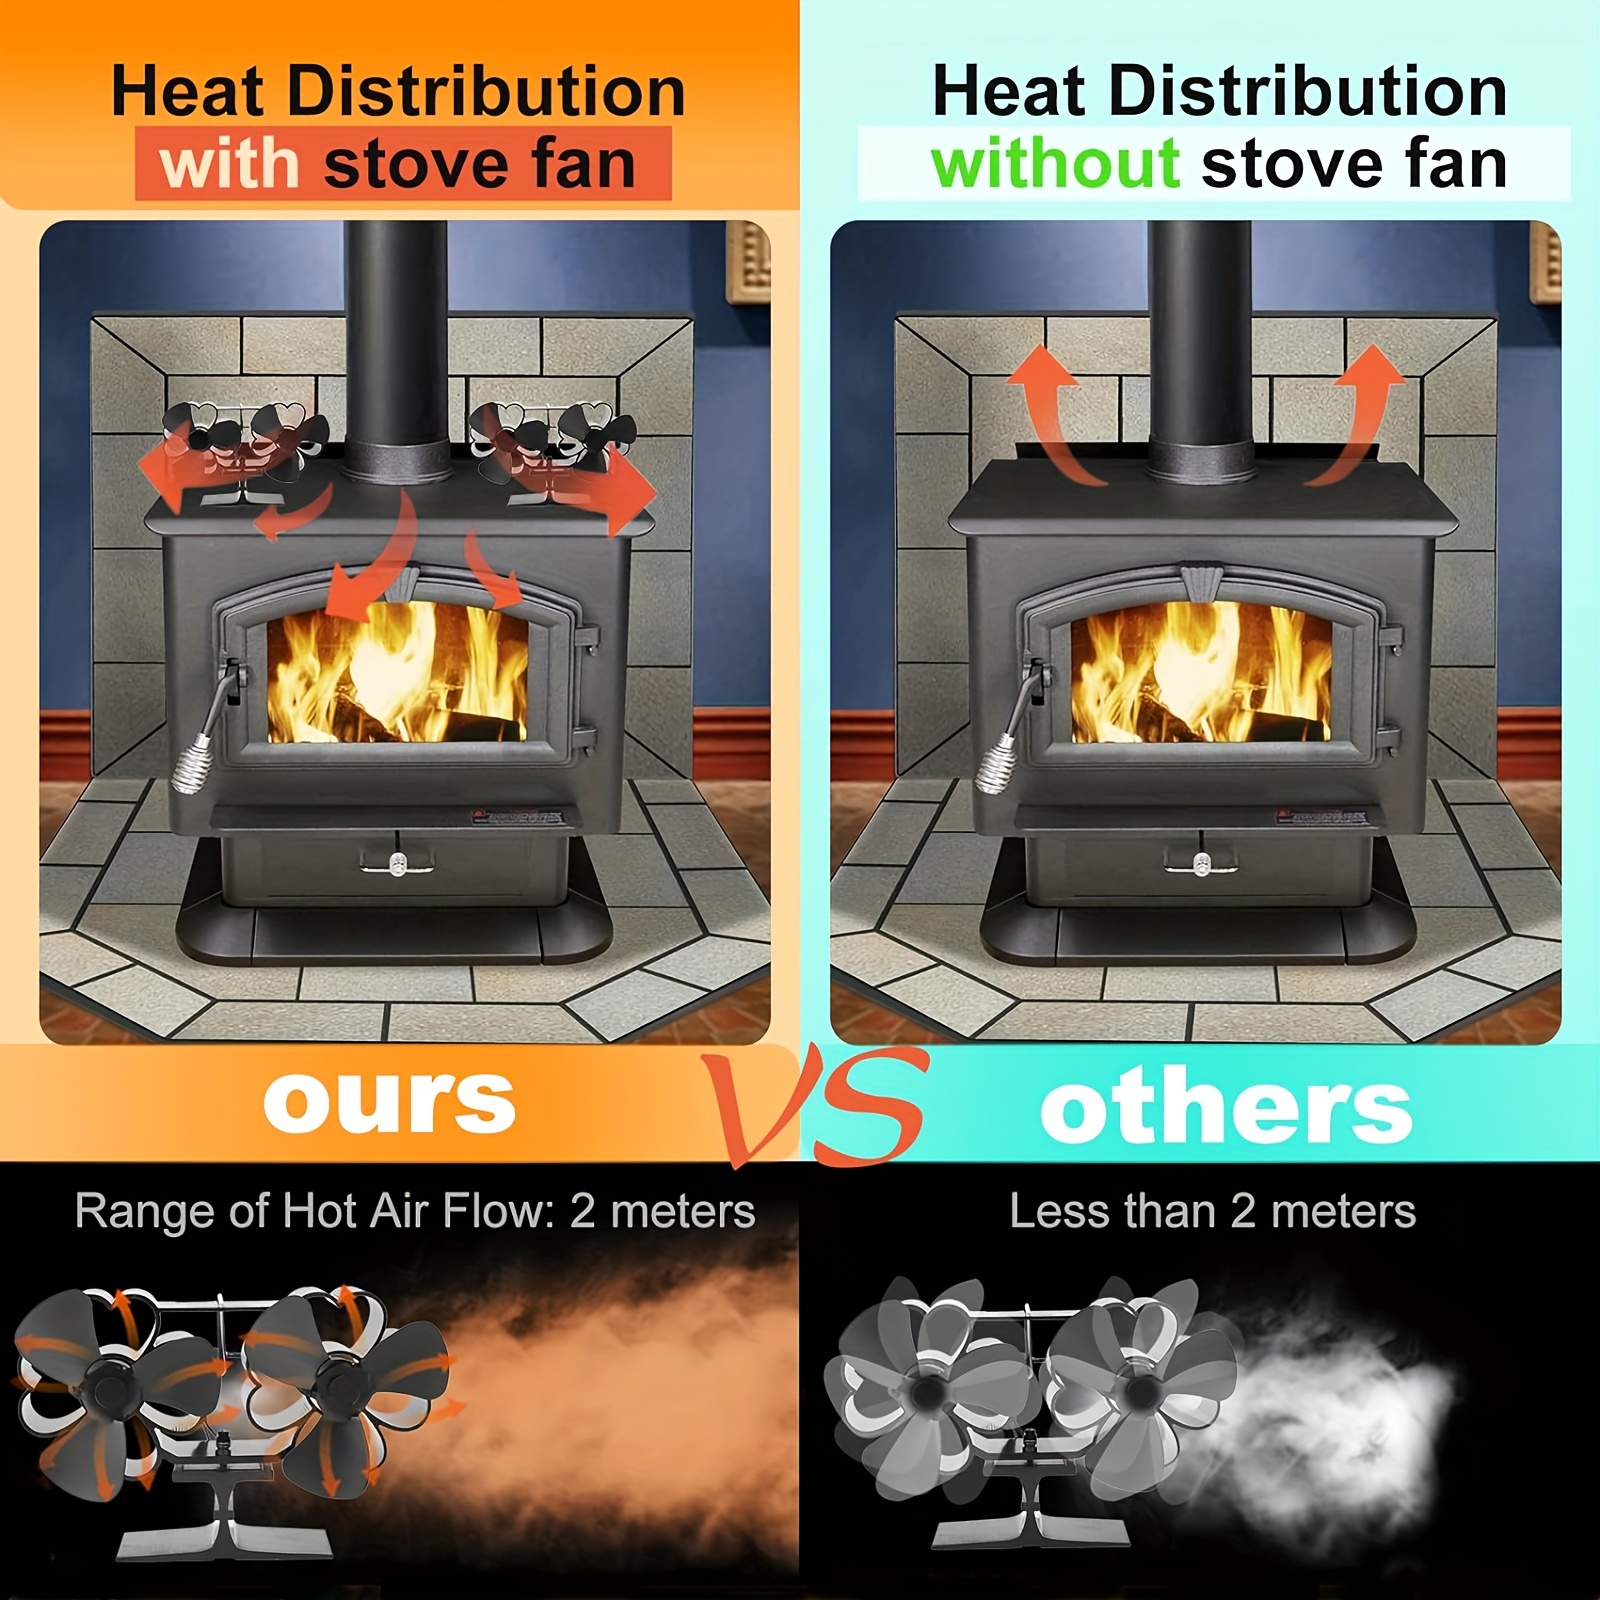 Ventilateur Thermodynamique pour répartition chaleur de Poêle à Bois, Accessoires de chauffage